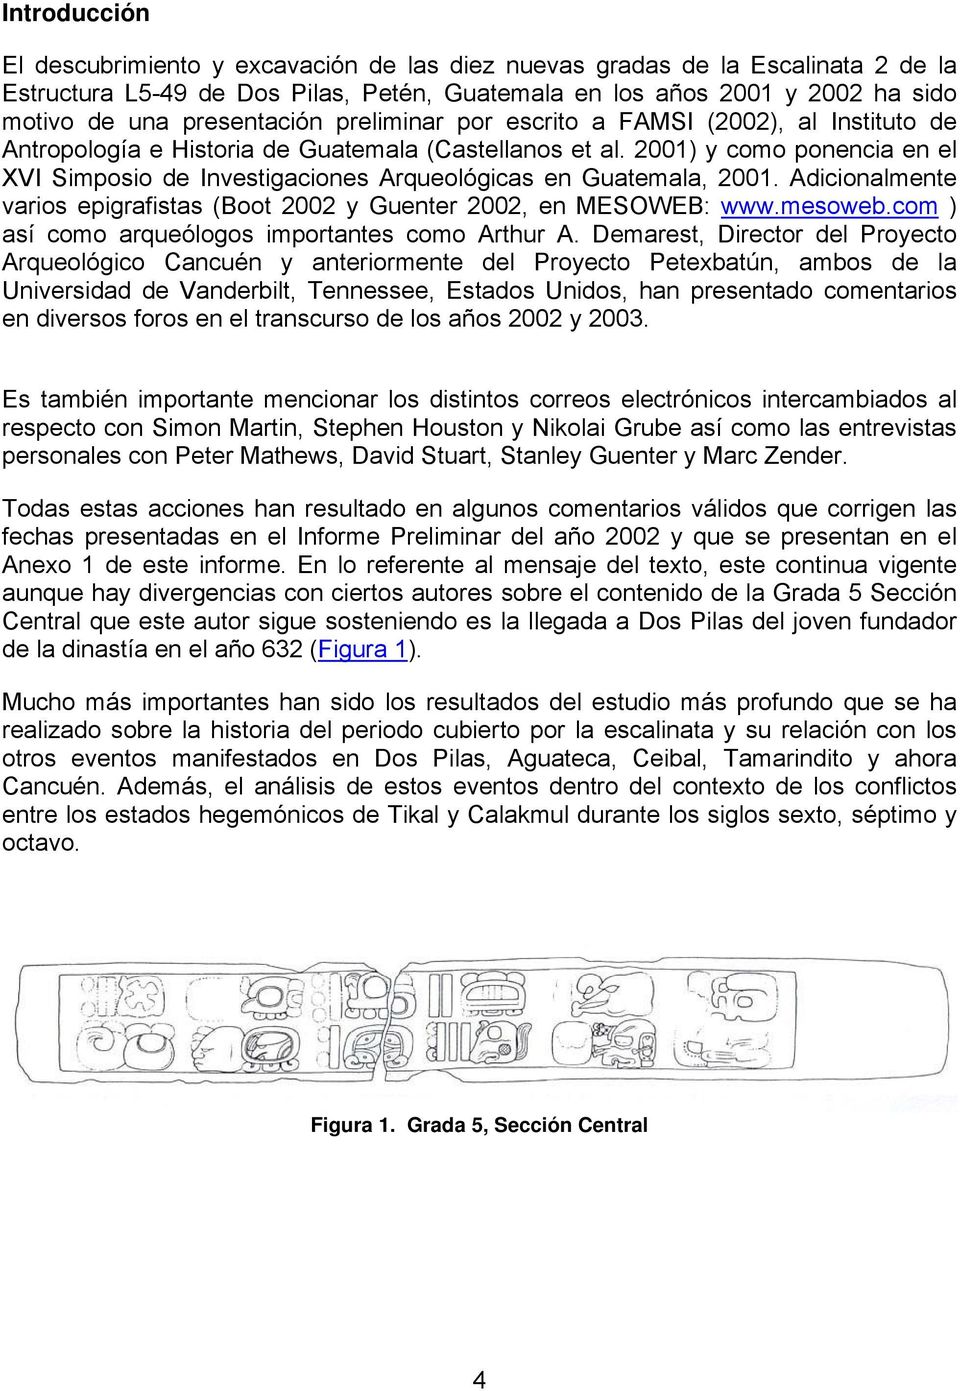 2001) y como ponencia en el XVI Simposio de Investigaciones Arqueológicas en Guatemala, 2001. Adicionalmente varios epigrafistas (Boot 2002 y Guenter 2002, en MESOWEB: www.mesoweb.